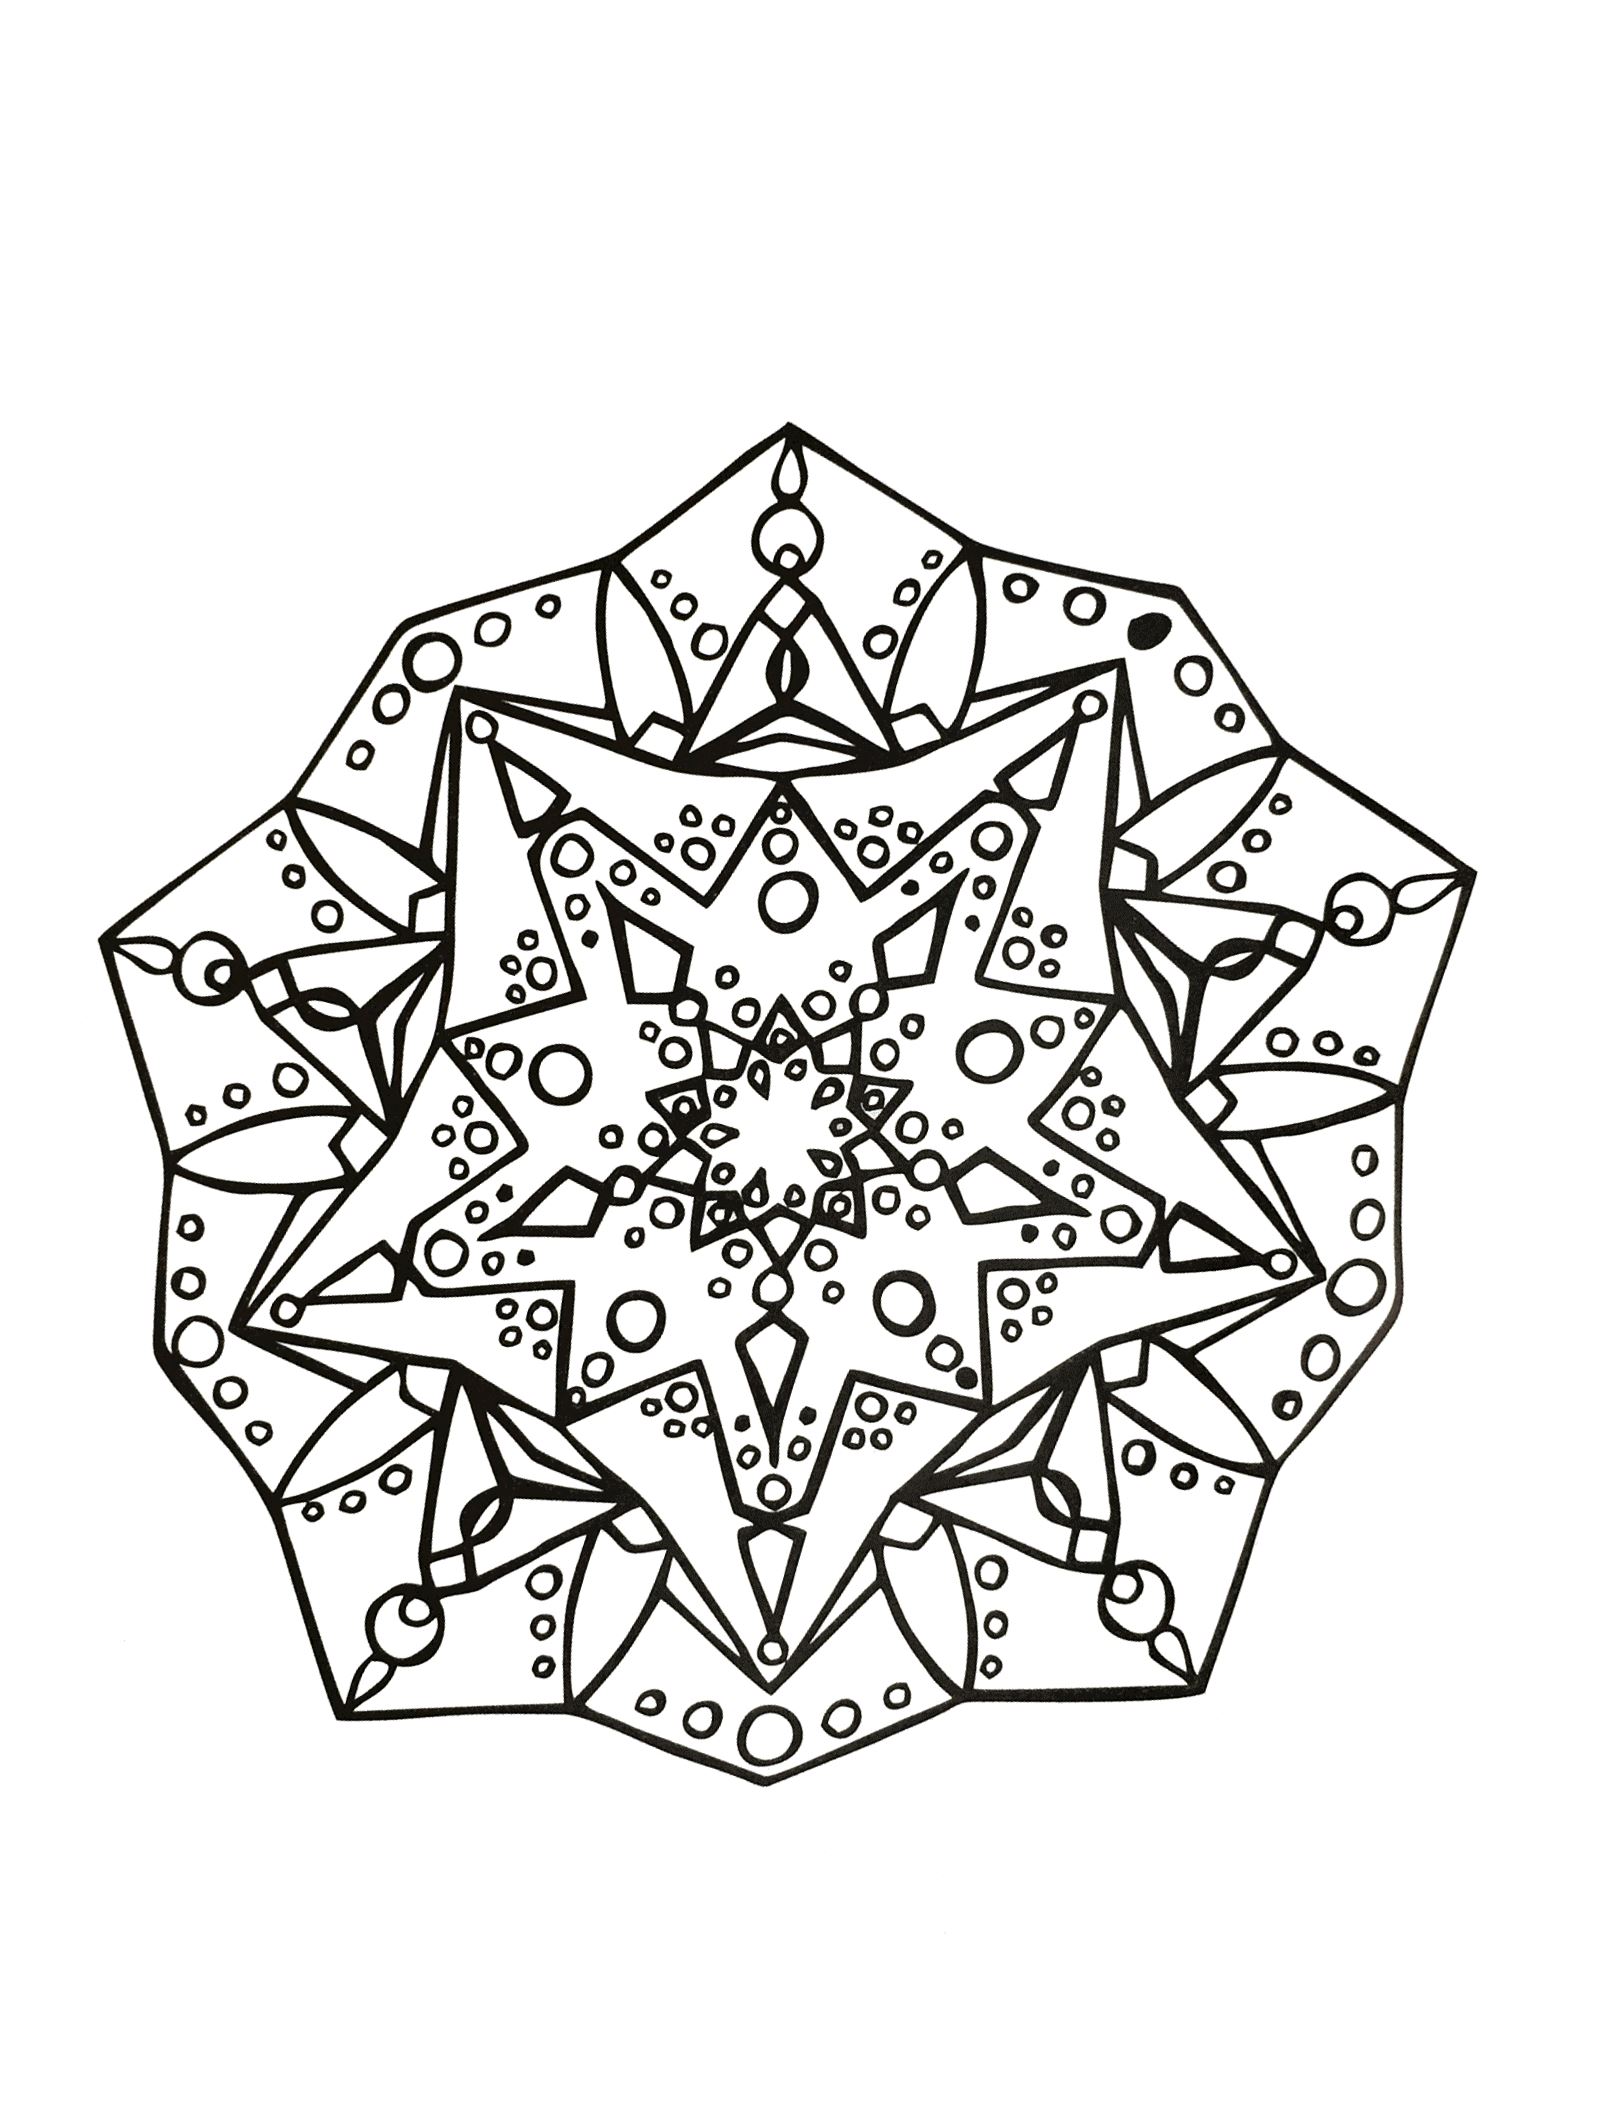 Si vous êtes prêt à passer de longues minutes de relaxation, préparez vous à colorier ce Mandala assez complexes ... Vous pourrez utiliser de nombreuses couleurs si vous le souhaitez.